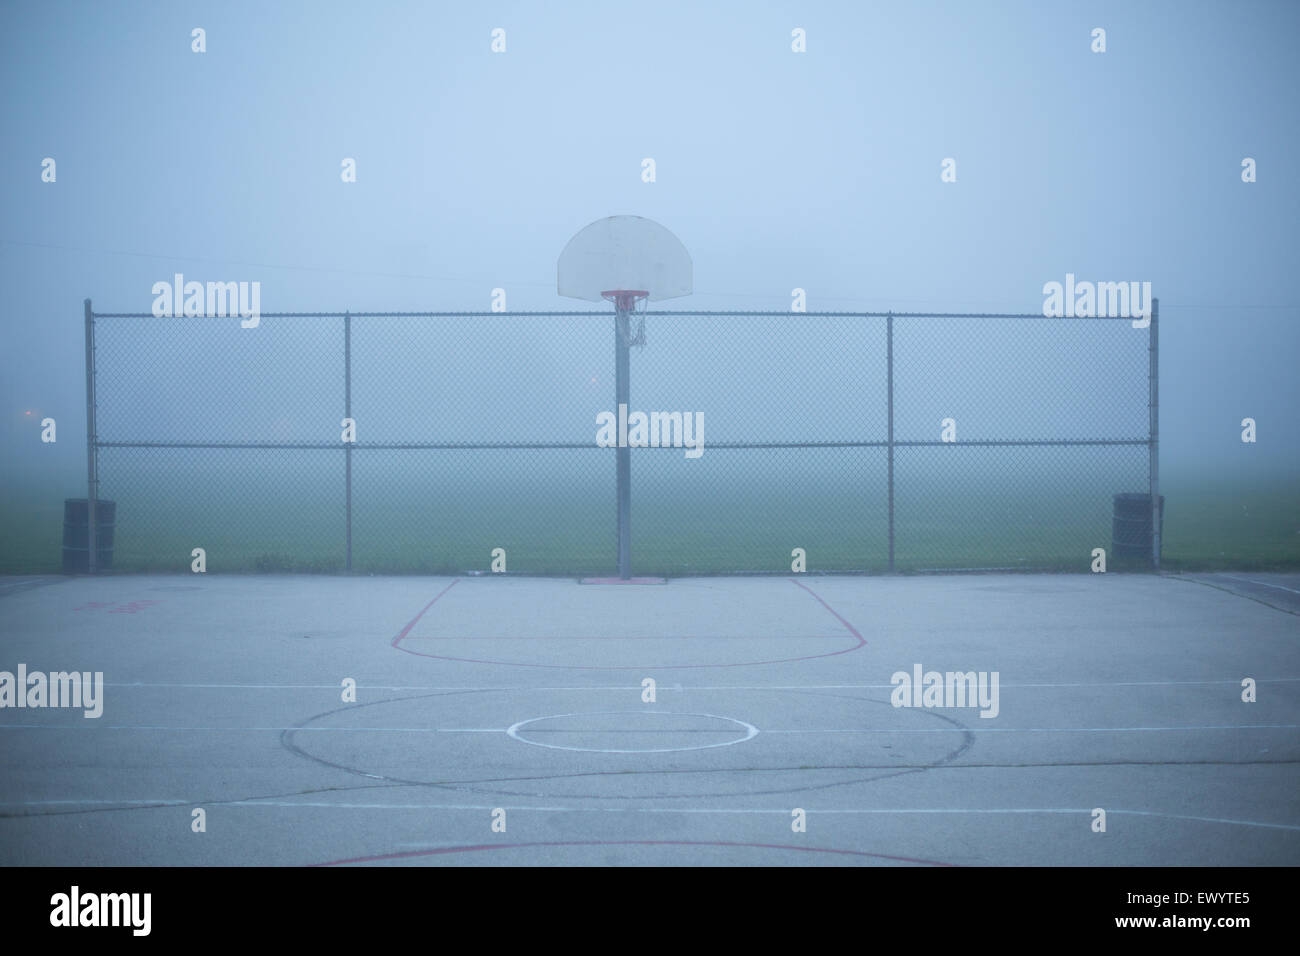 Eine neblige Stadtlandschaft in der Abenddämmerung auf einem Basketballfeld in einem Park. Stockfoto